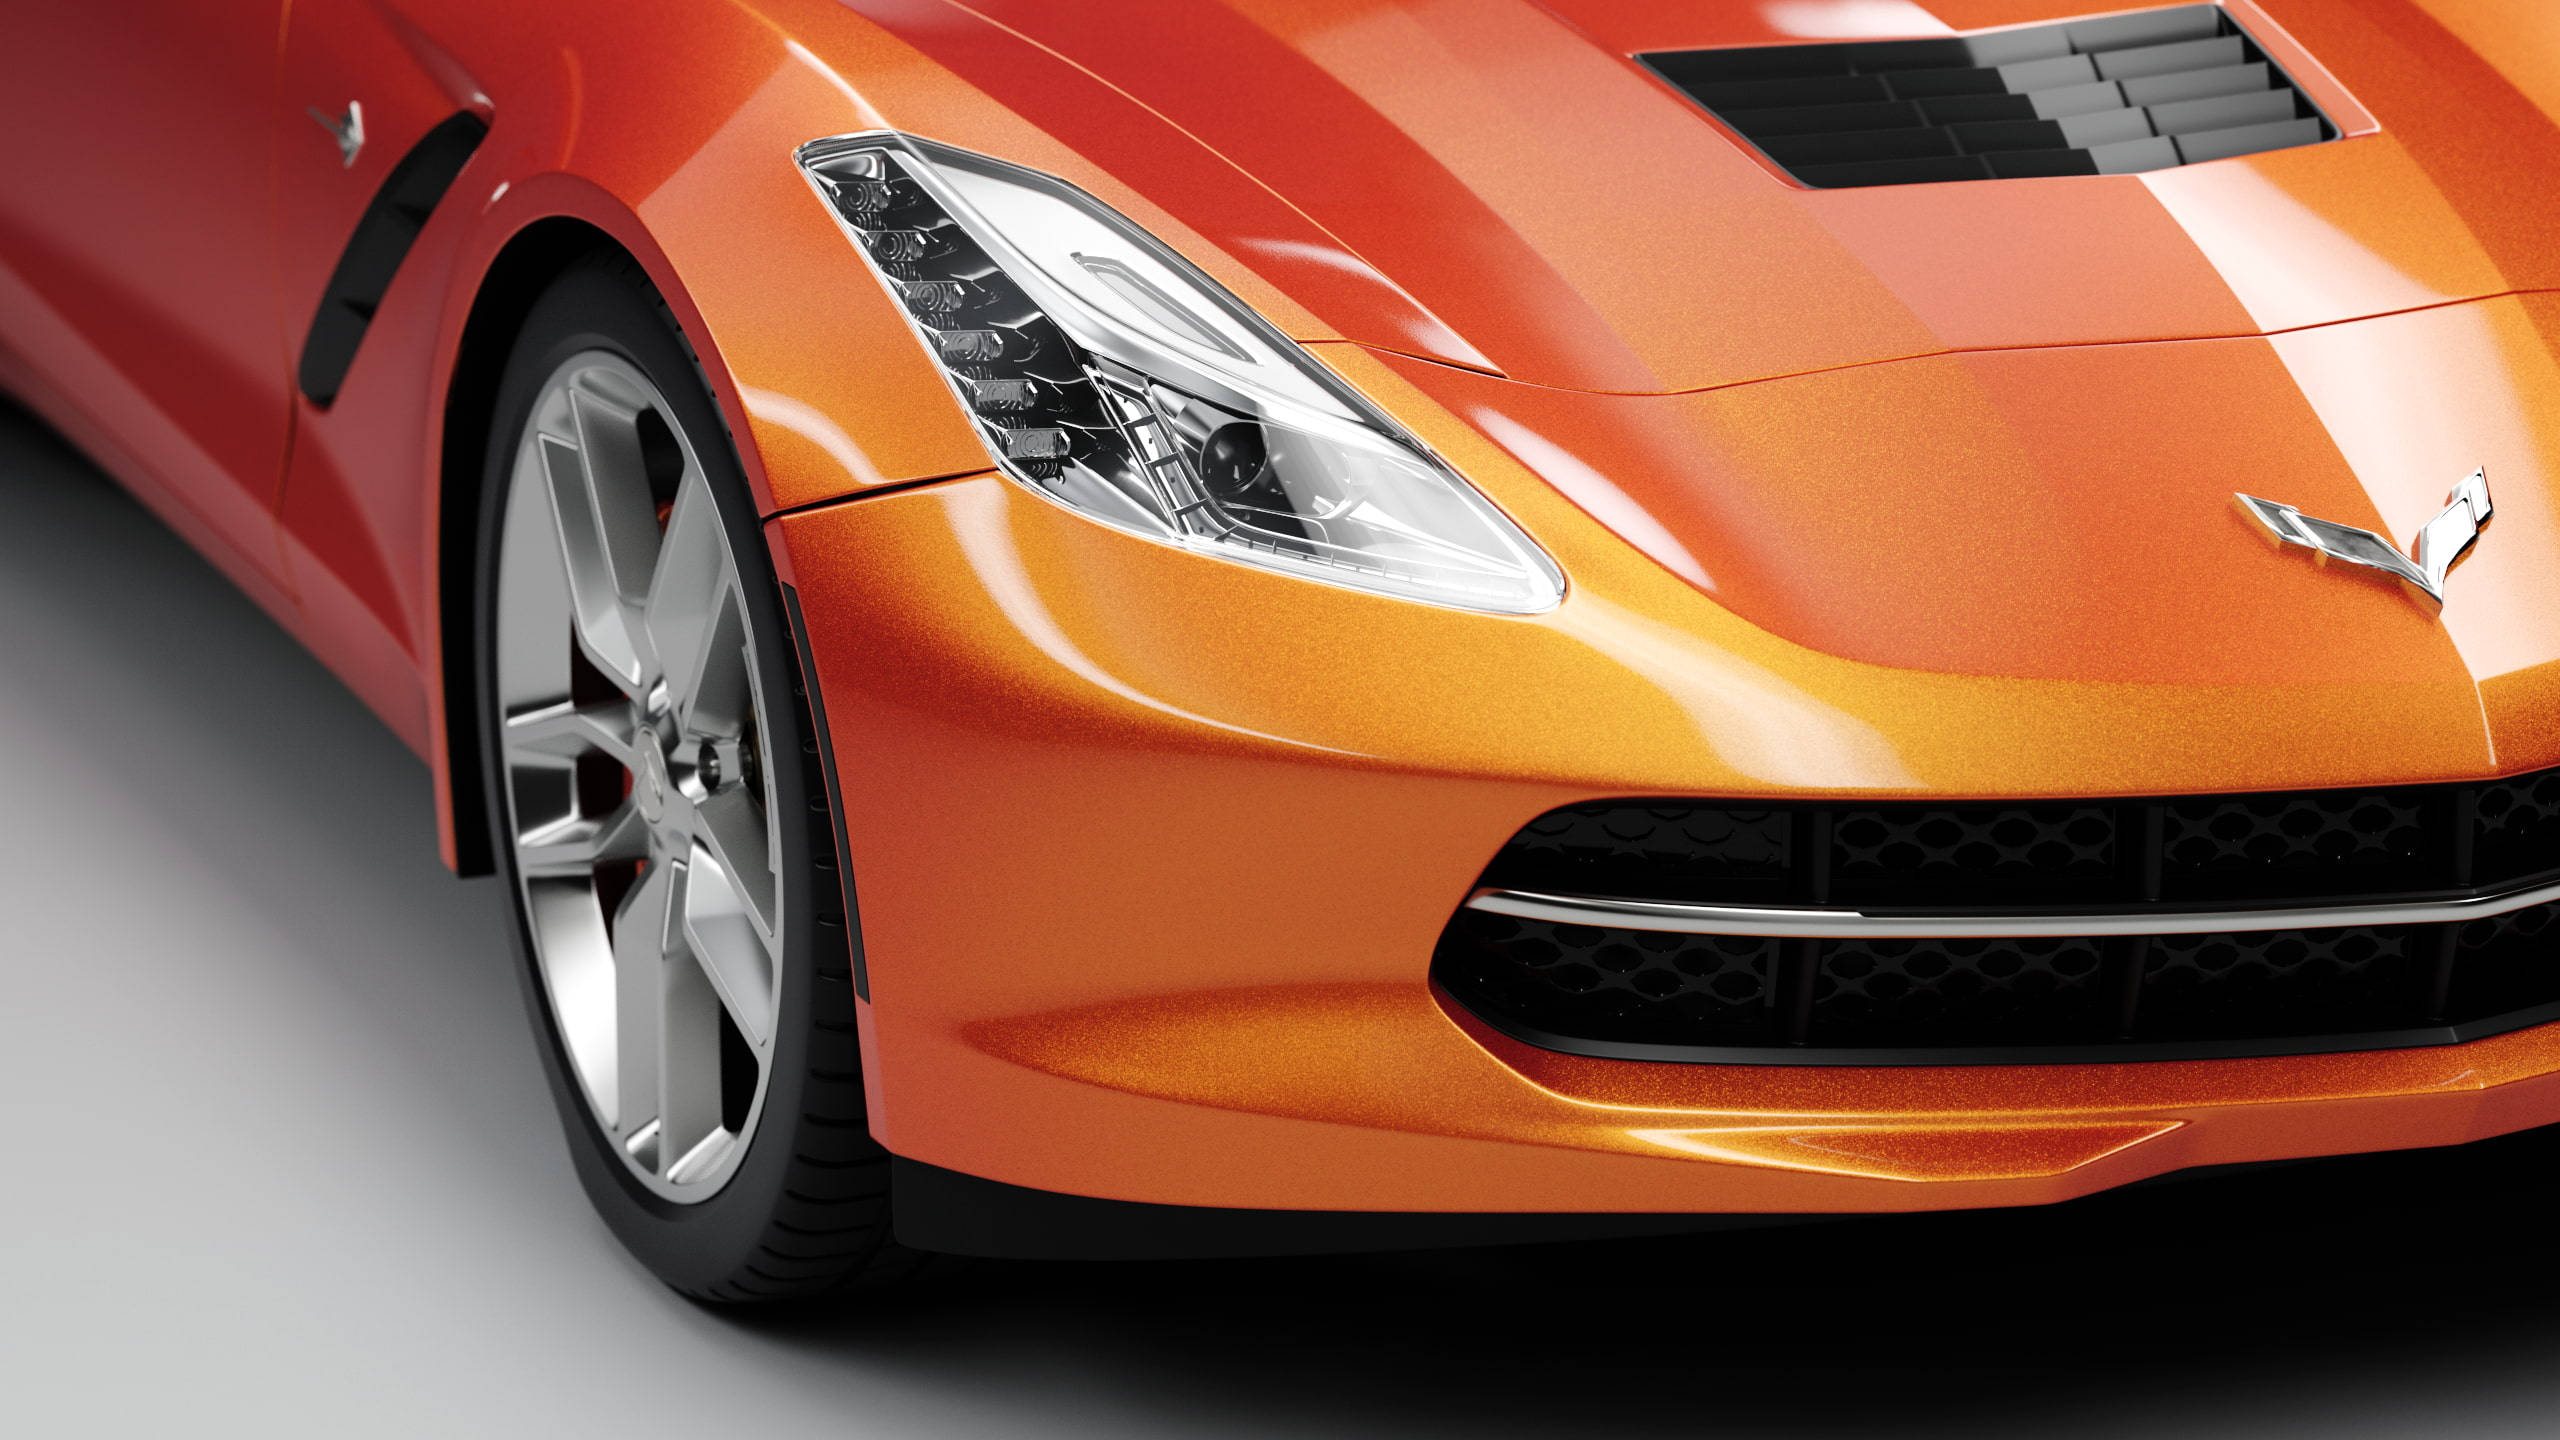 2560x1440 Car Orange Chevrolet Corvette Wallpaper